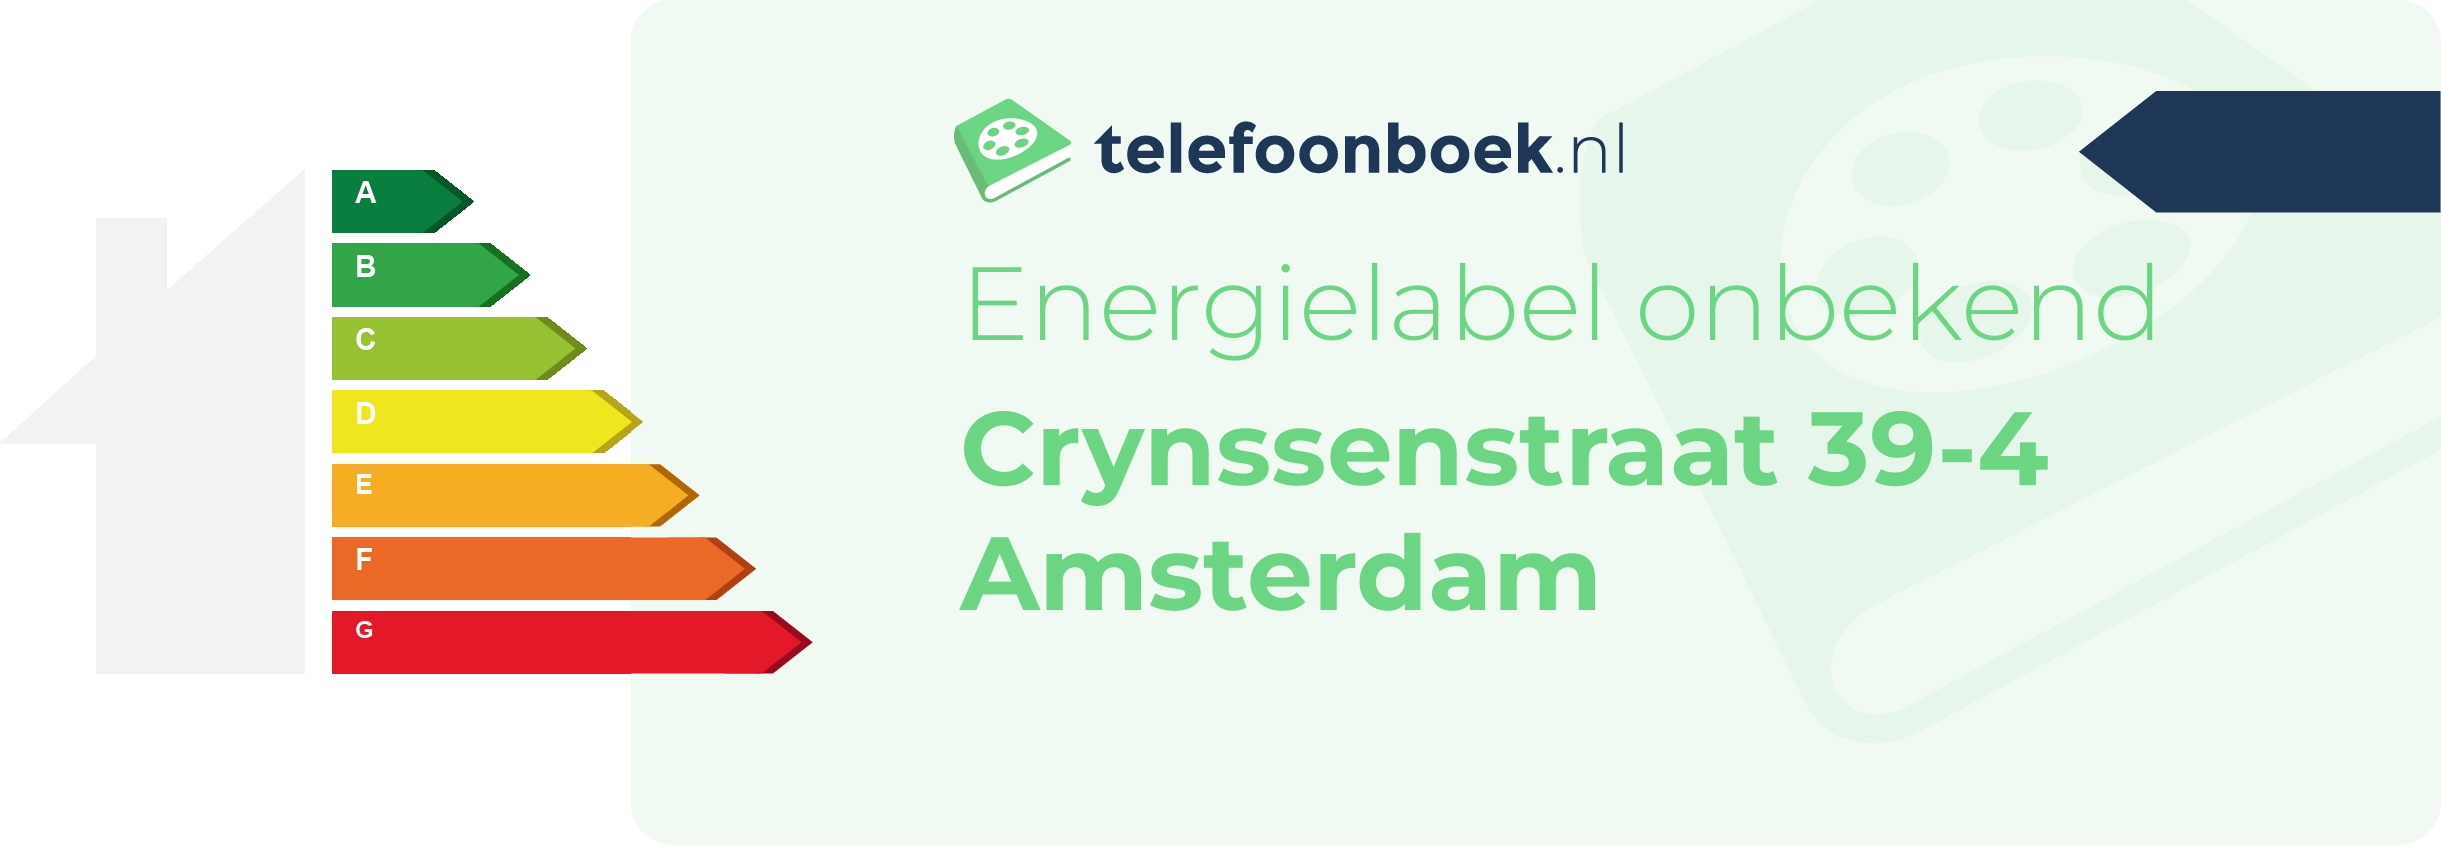 Energielabel Crynssenstraat 39-4 Amsterdam